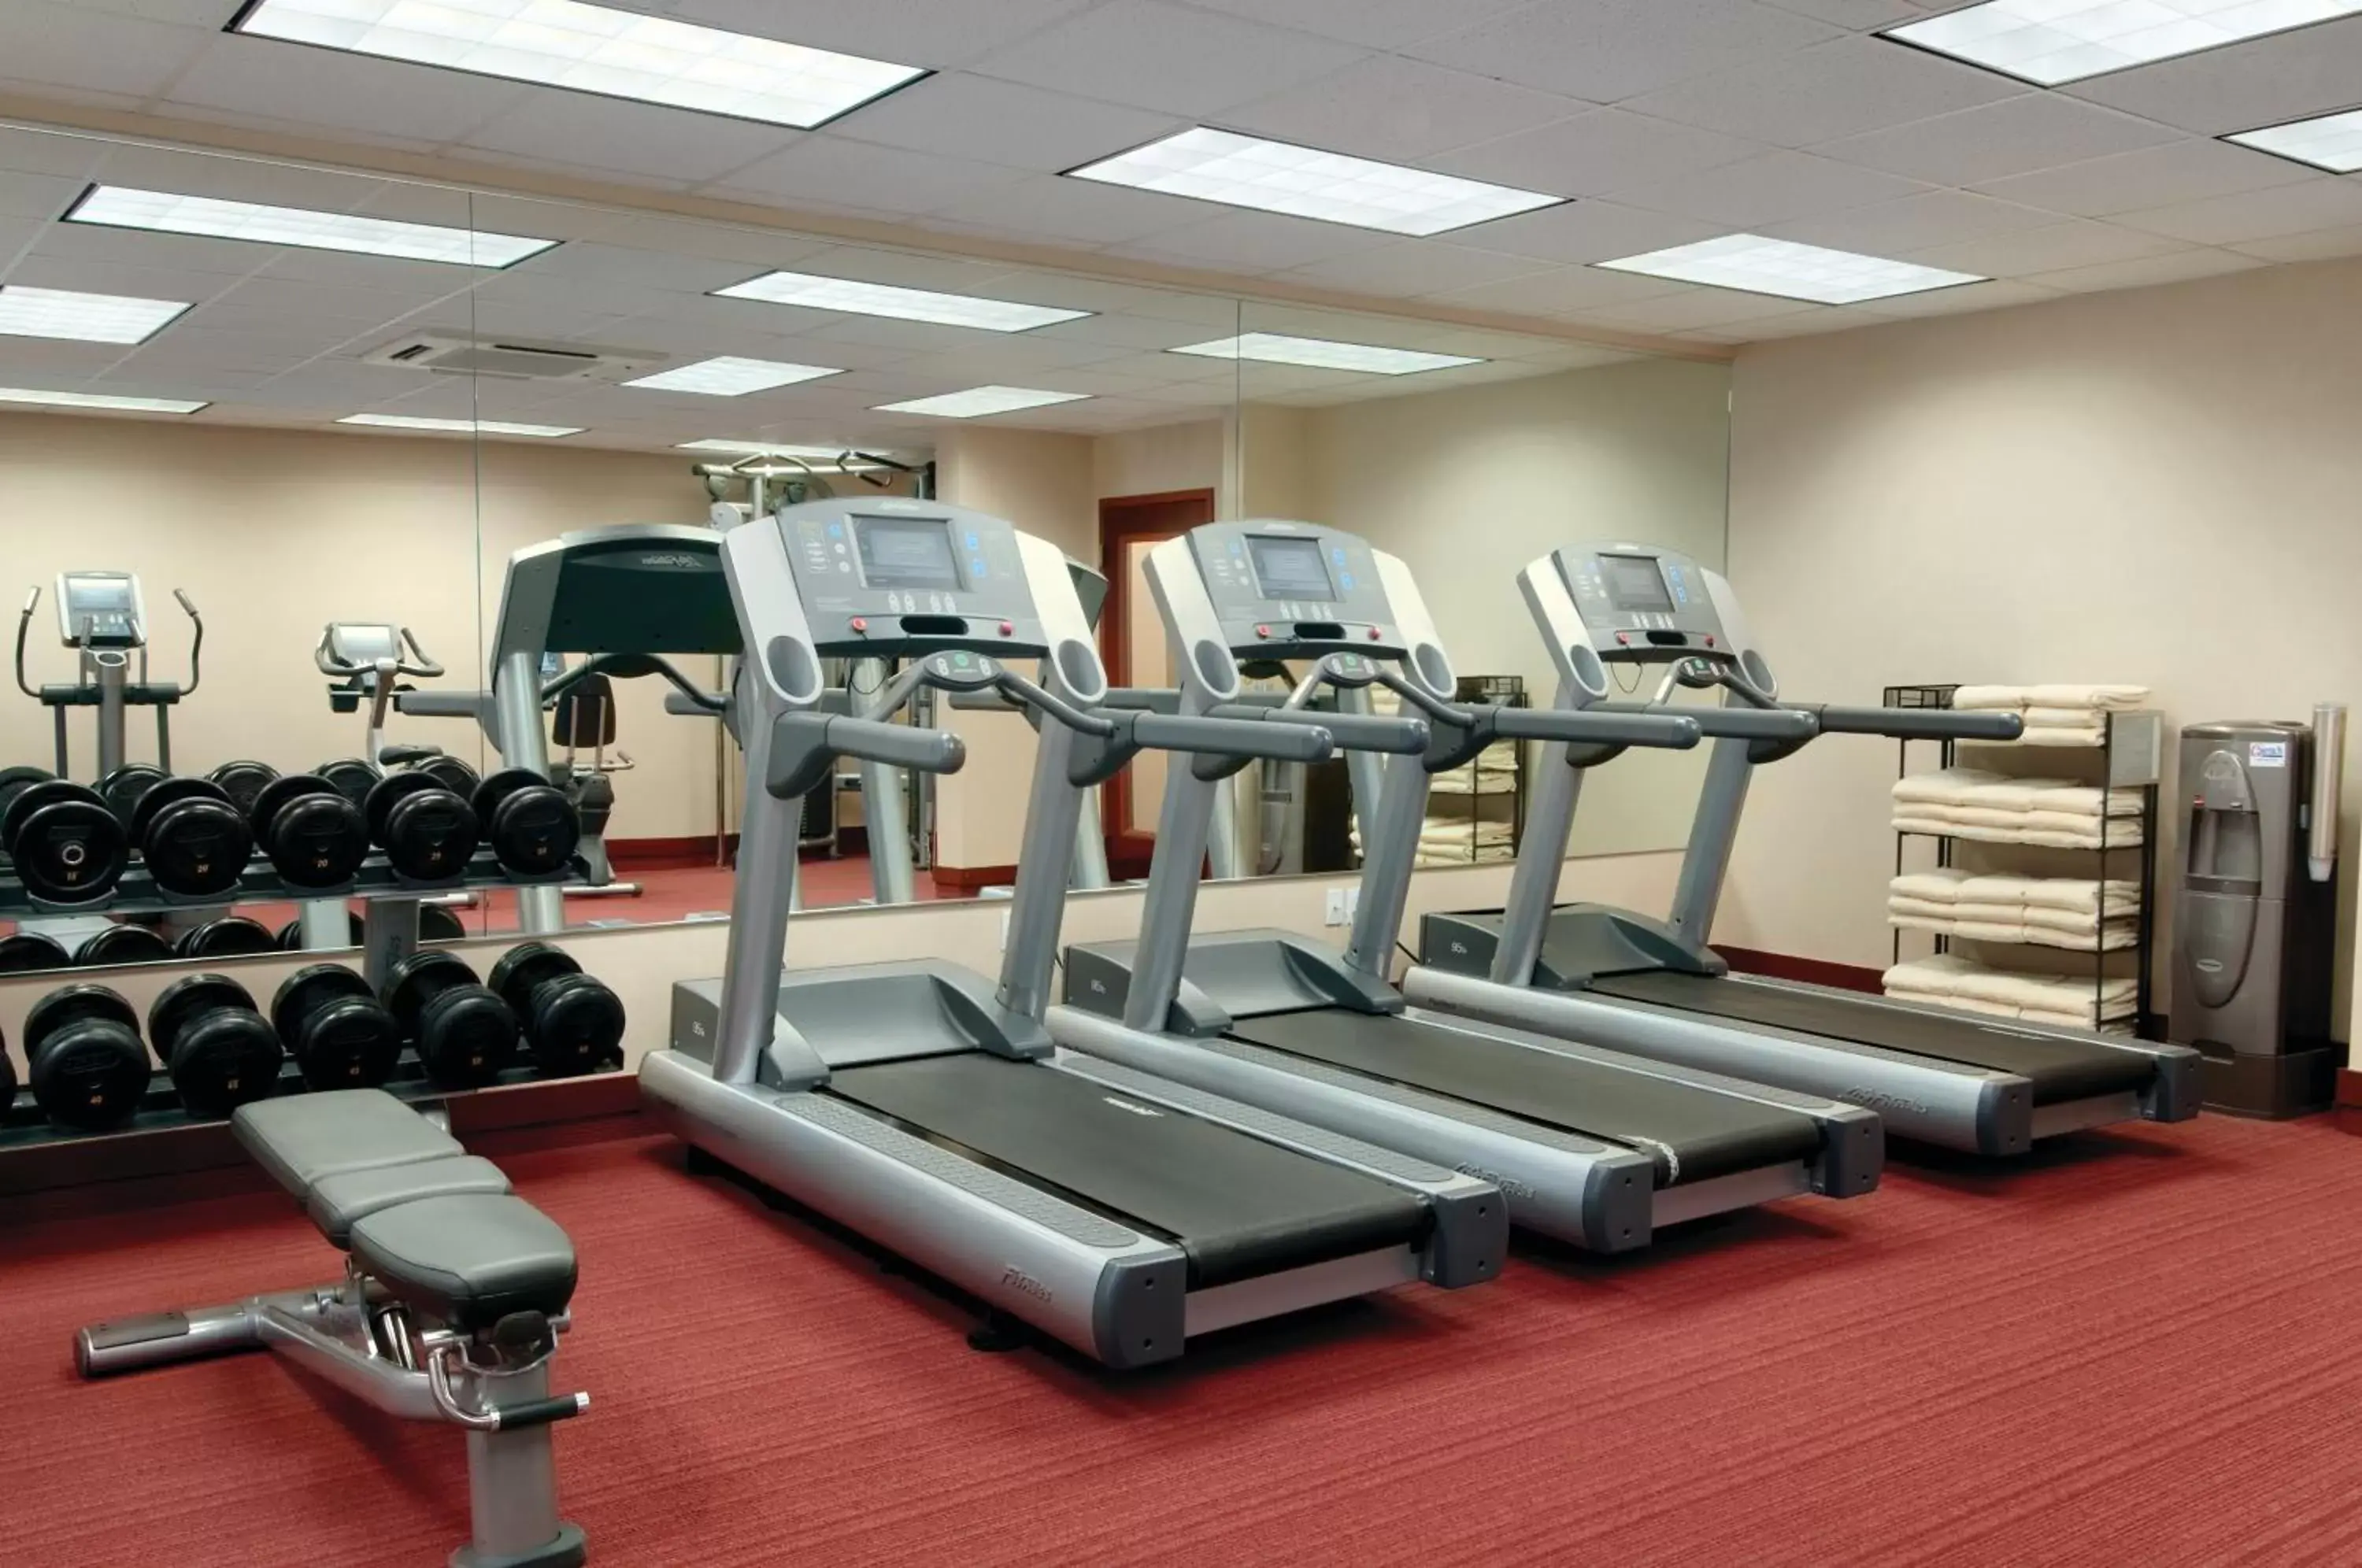 Fitness centre/facilities, Fitness Center/Facilities in Hyatt House Denver Tech Center